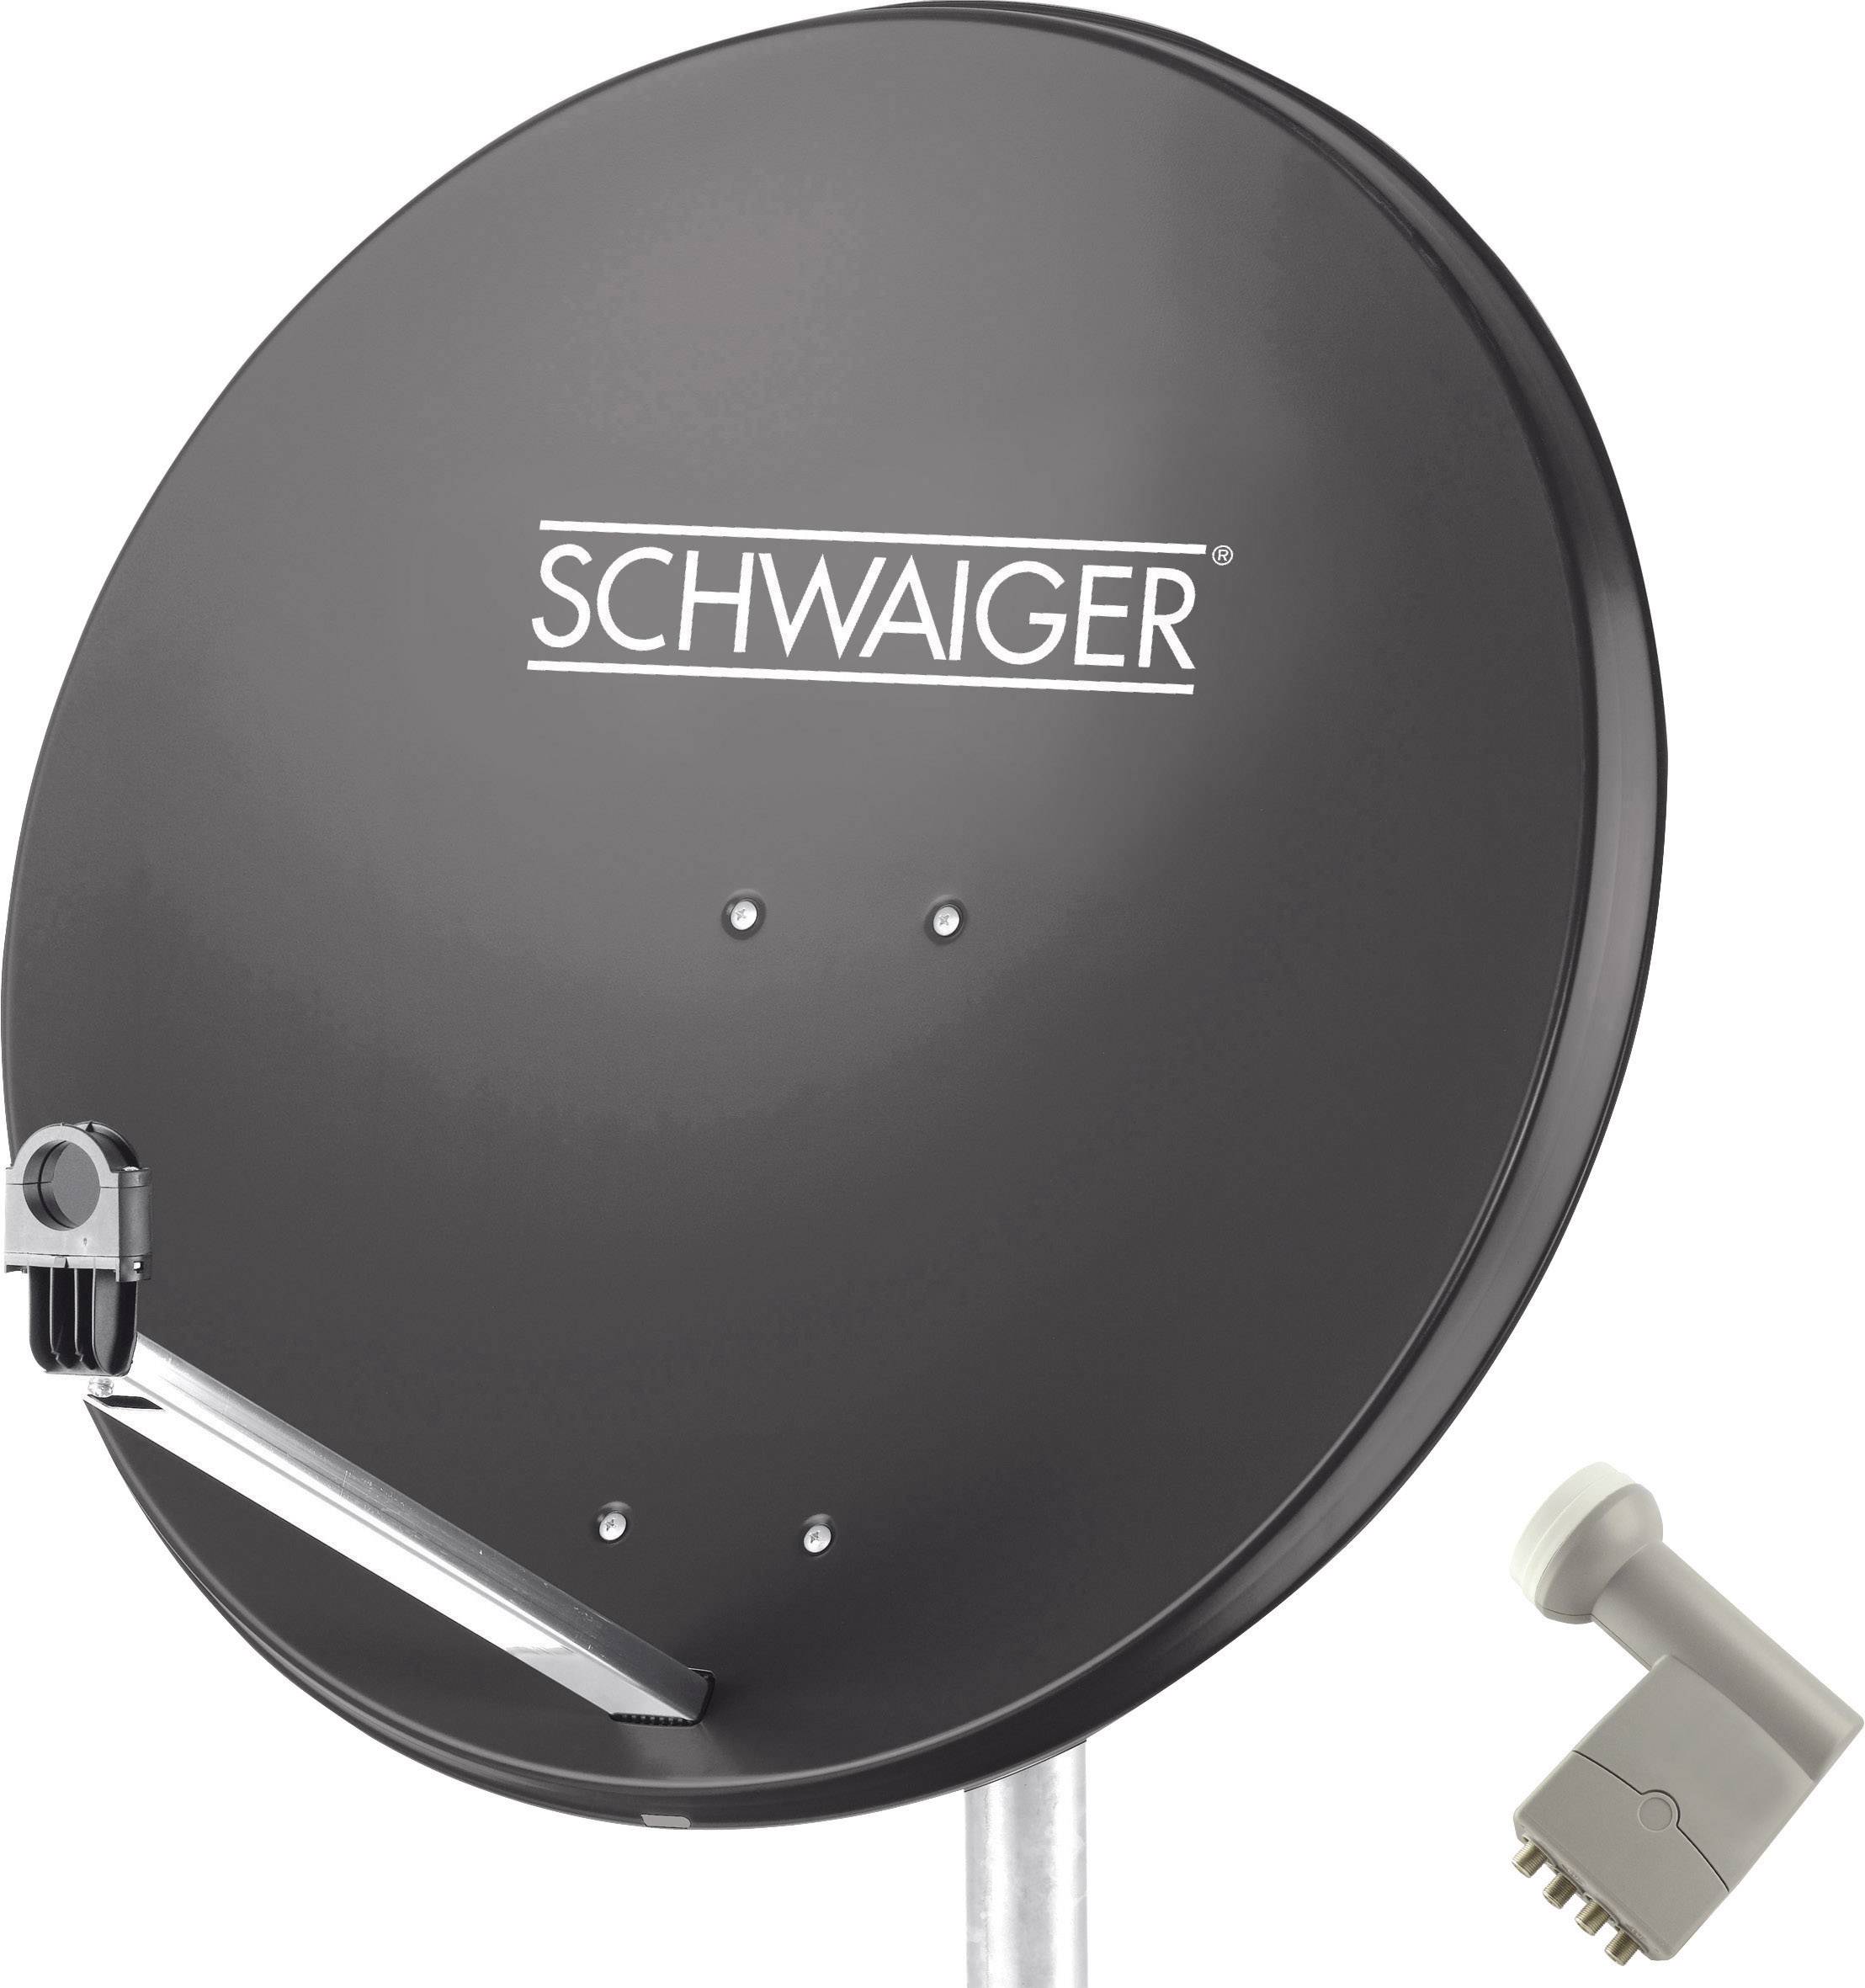 SCHWAIGER SPI9961SET9 SAT-Anlage ohne Receiver Teilnehmer-Anzahl 4 80 cm